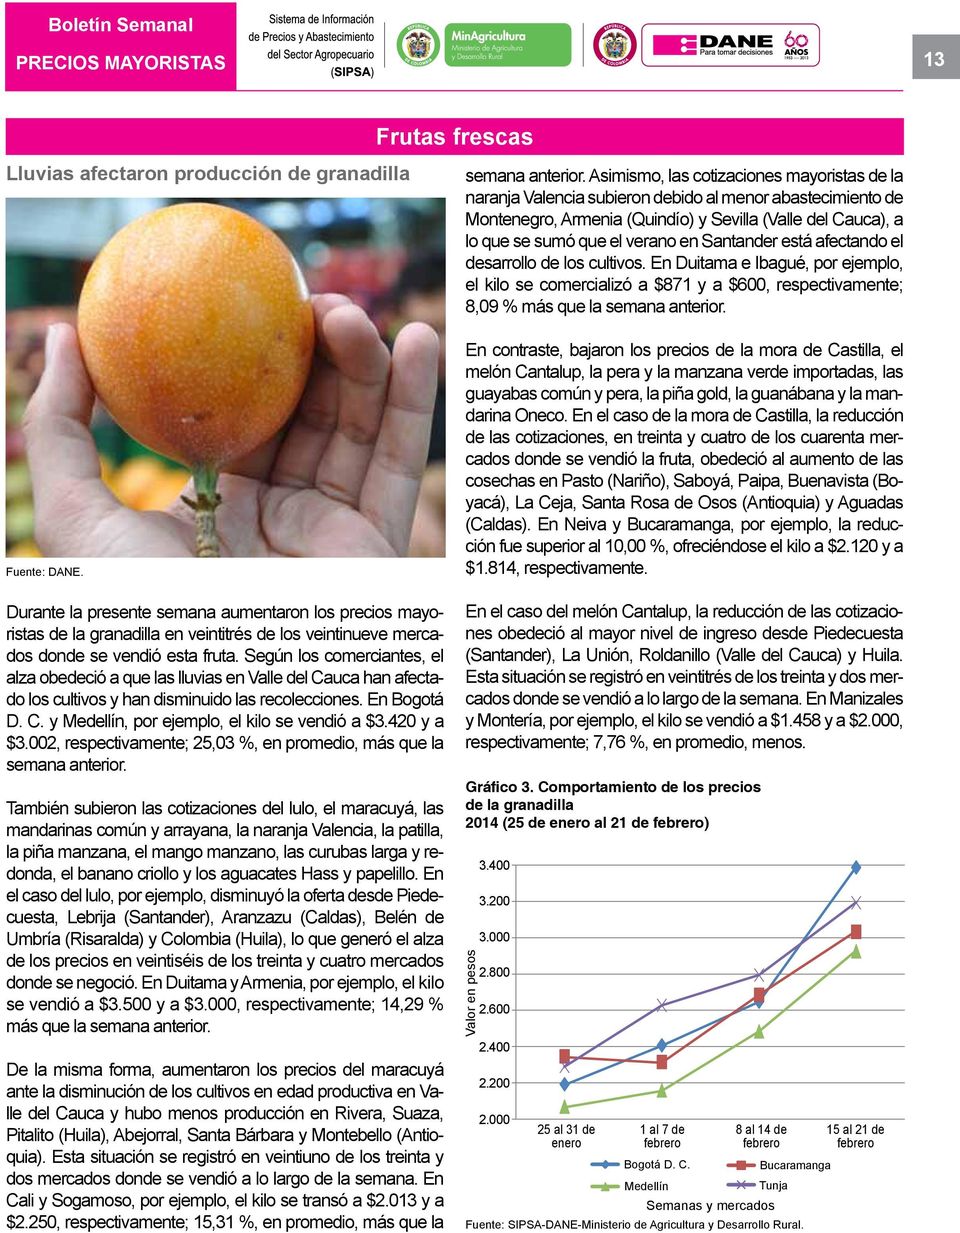 Según los comerciantes, el alza obedeció a que las lluvias en Valle del Cauca han afectado los cultivos y han disminuido las recolecciones. En Bogotá D. C. y Medellín, por ejemplo, el kilo se vendió a $3.